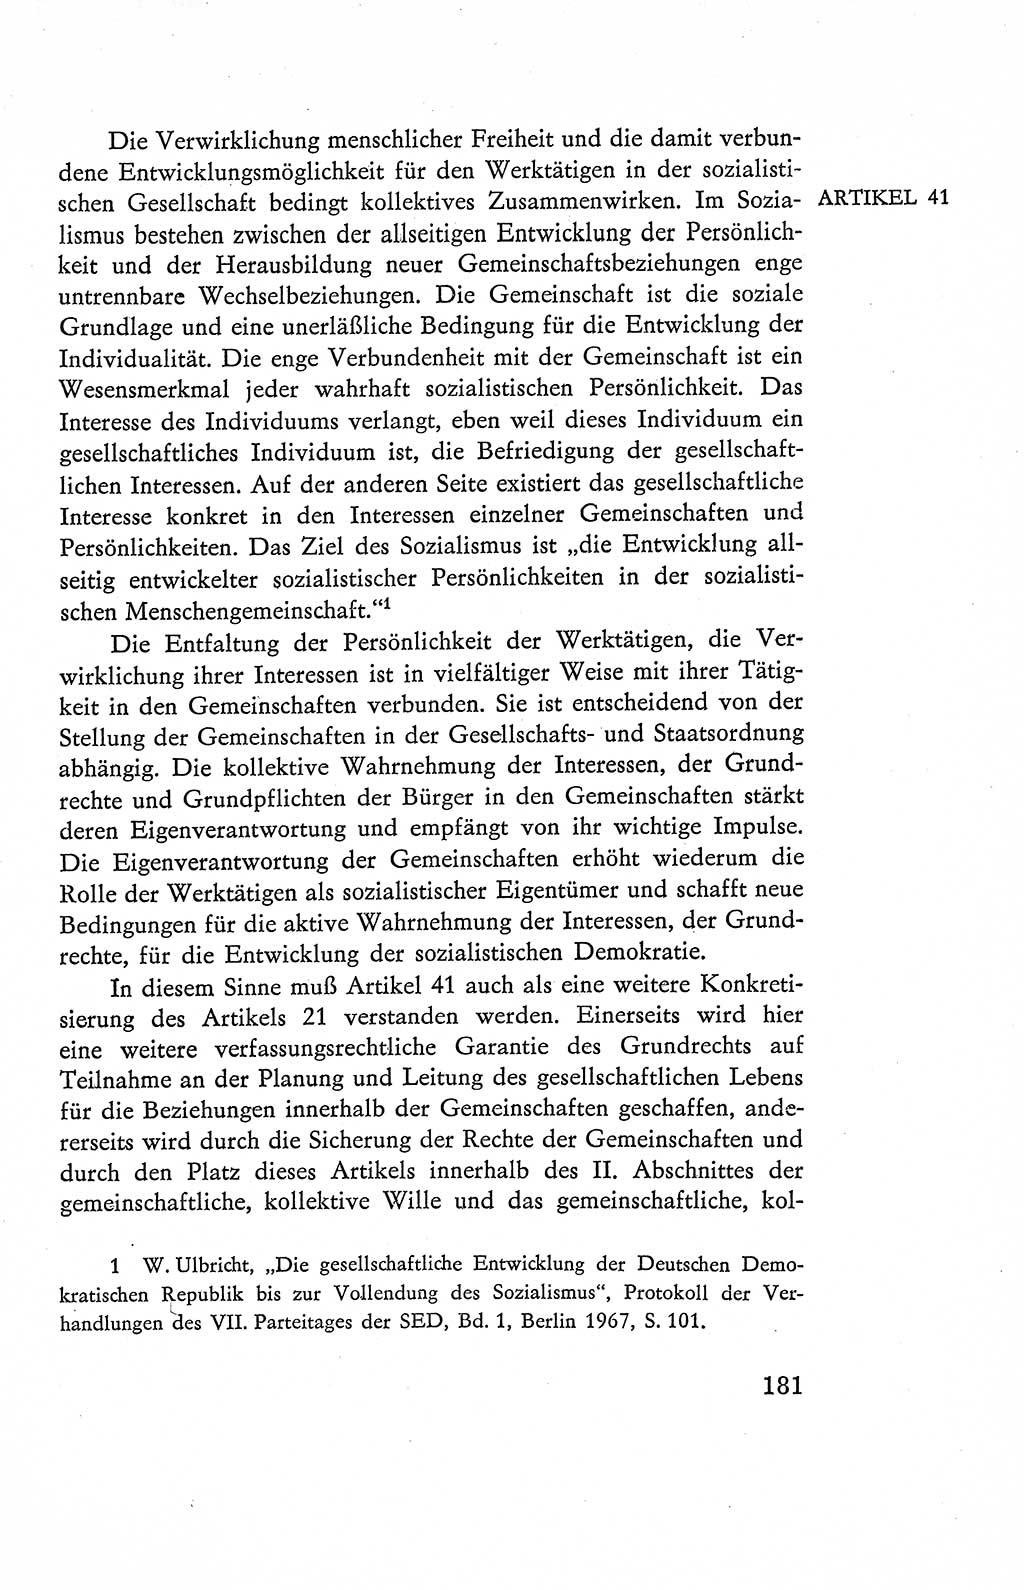 Verfassung der Deutschen Demokratischen Republik (DDR), Dokumente, Kommentar 1969, Band 2, Seite 181 (Verf. DDR Dok. Komm. 1969, Bd. 2, S. 181)